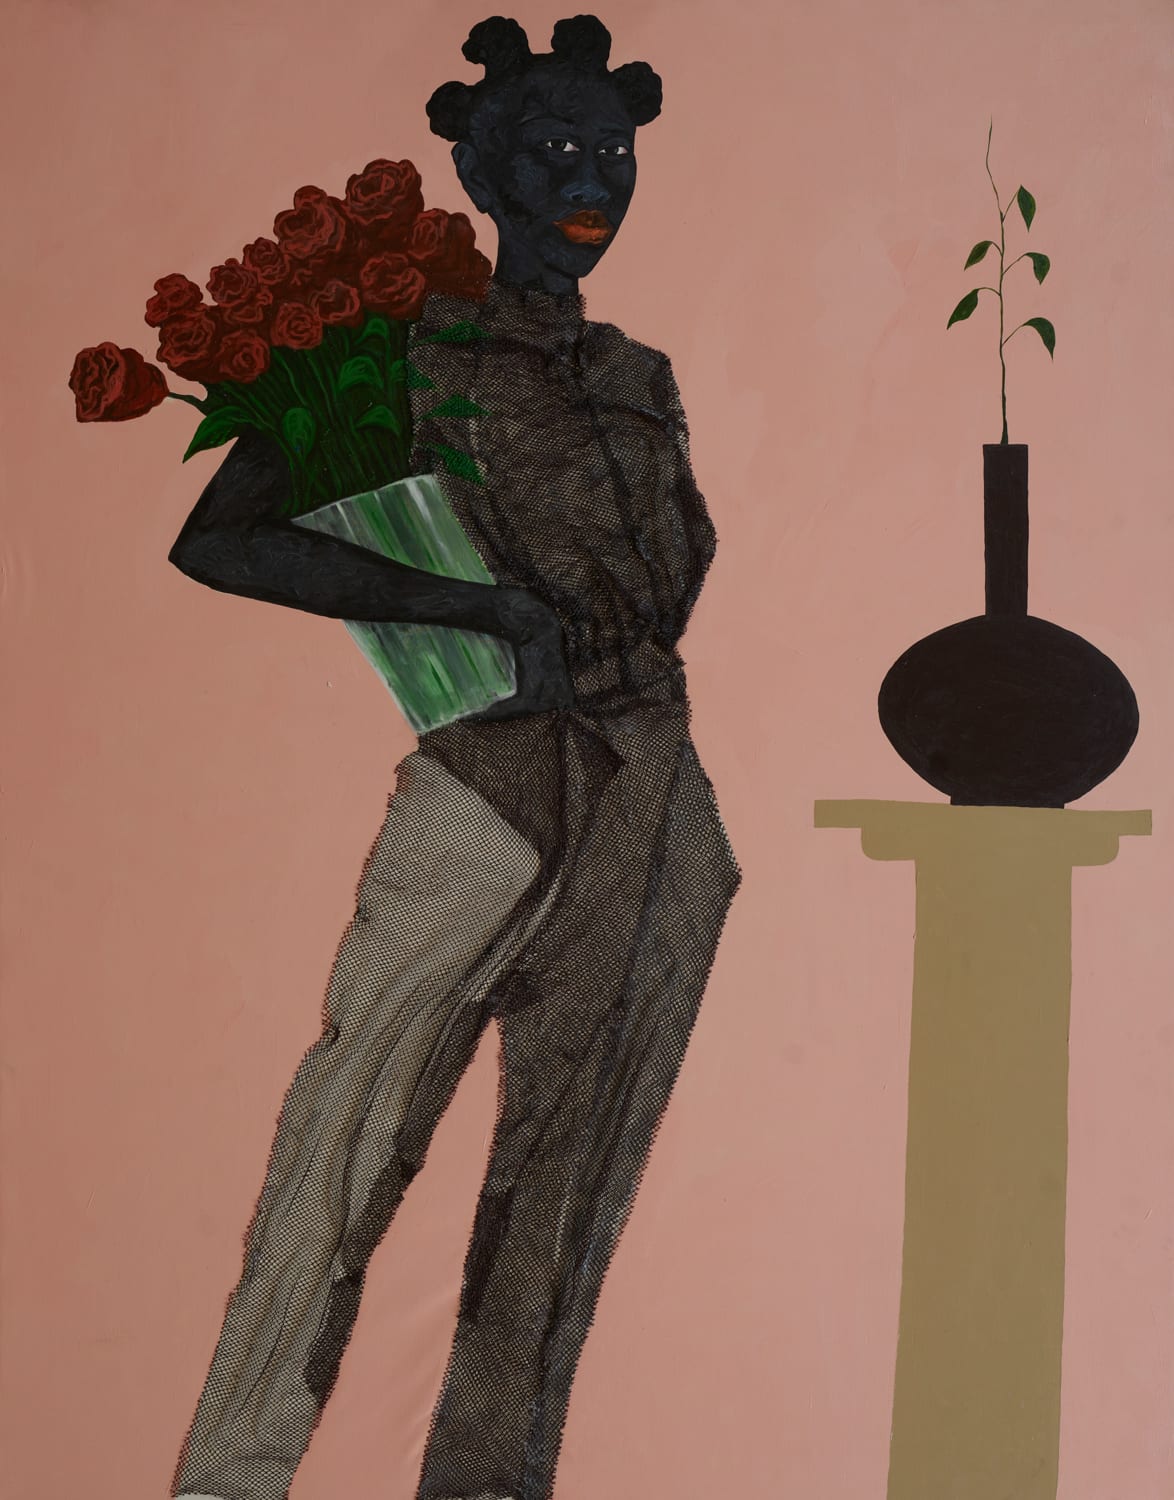 Eric Adjei Tawiah, The Bouquet, 2020